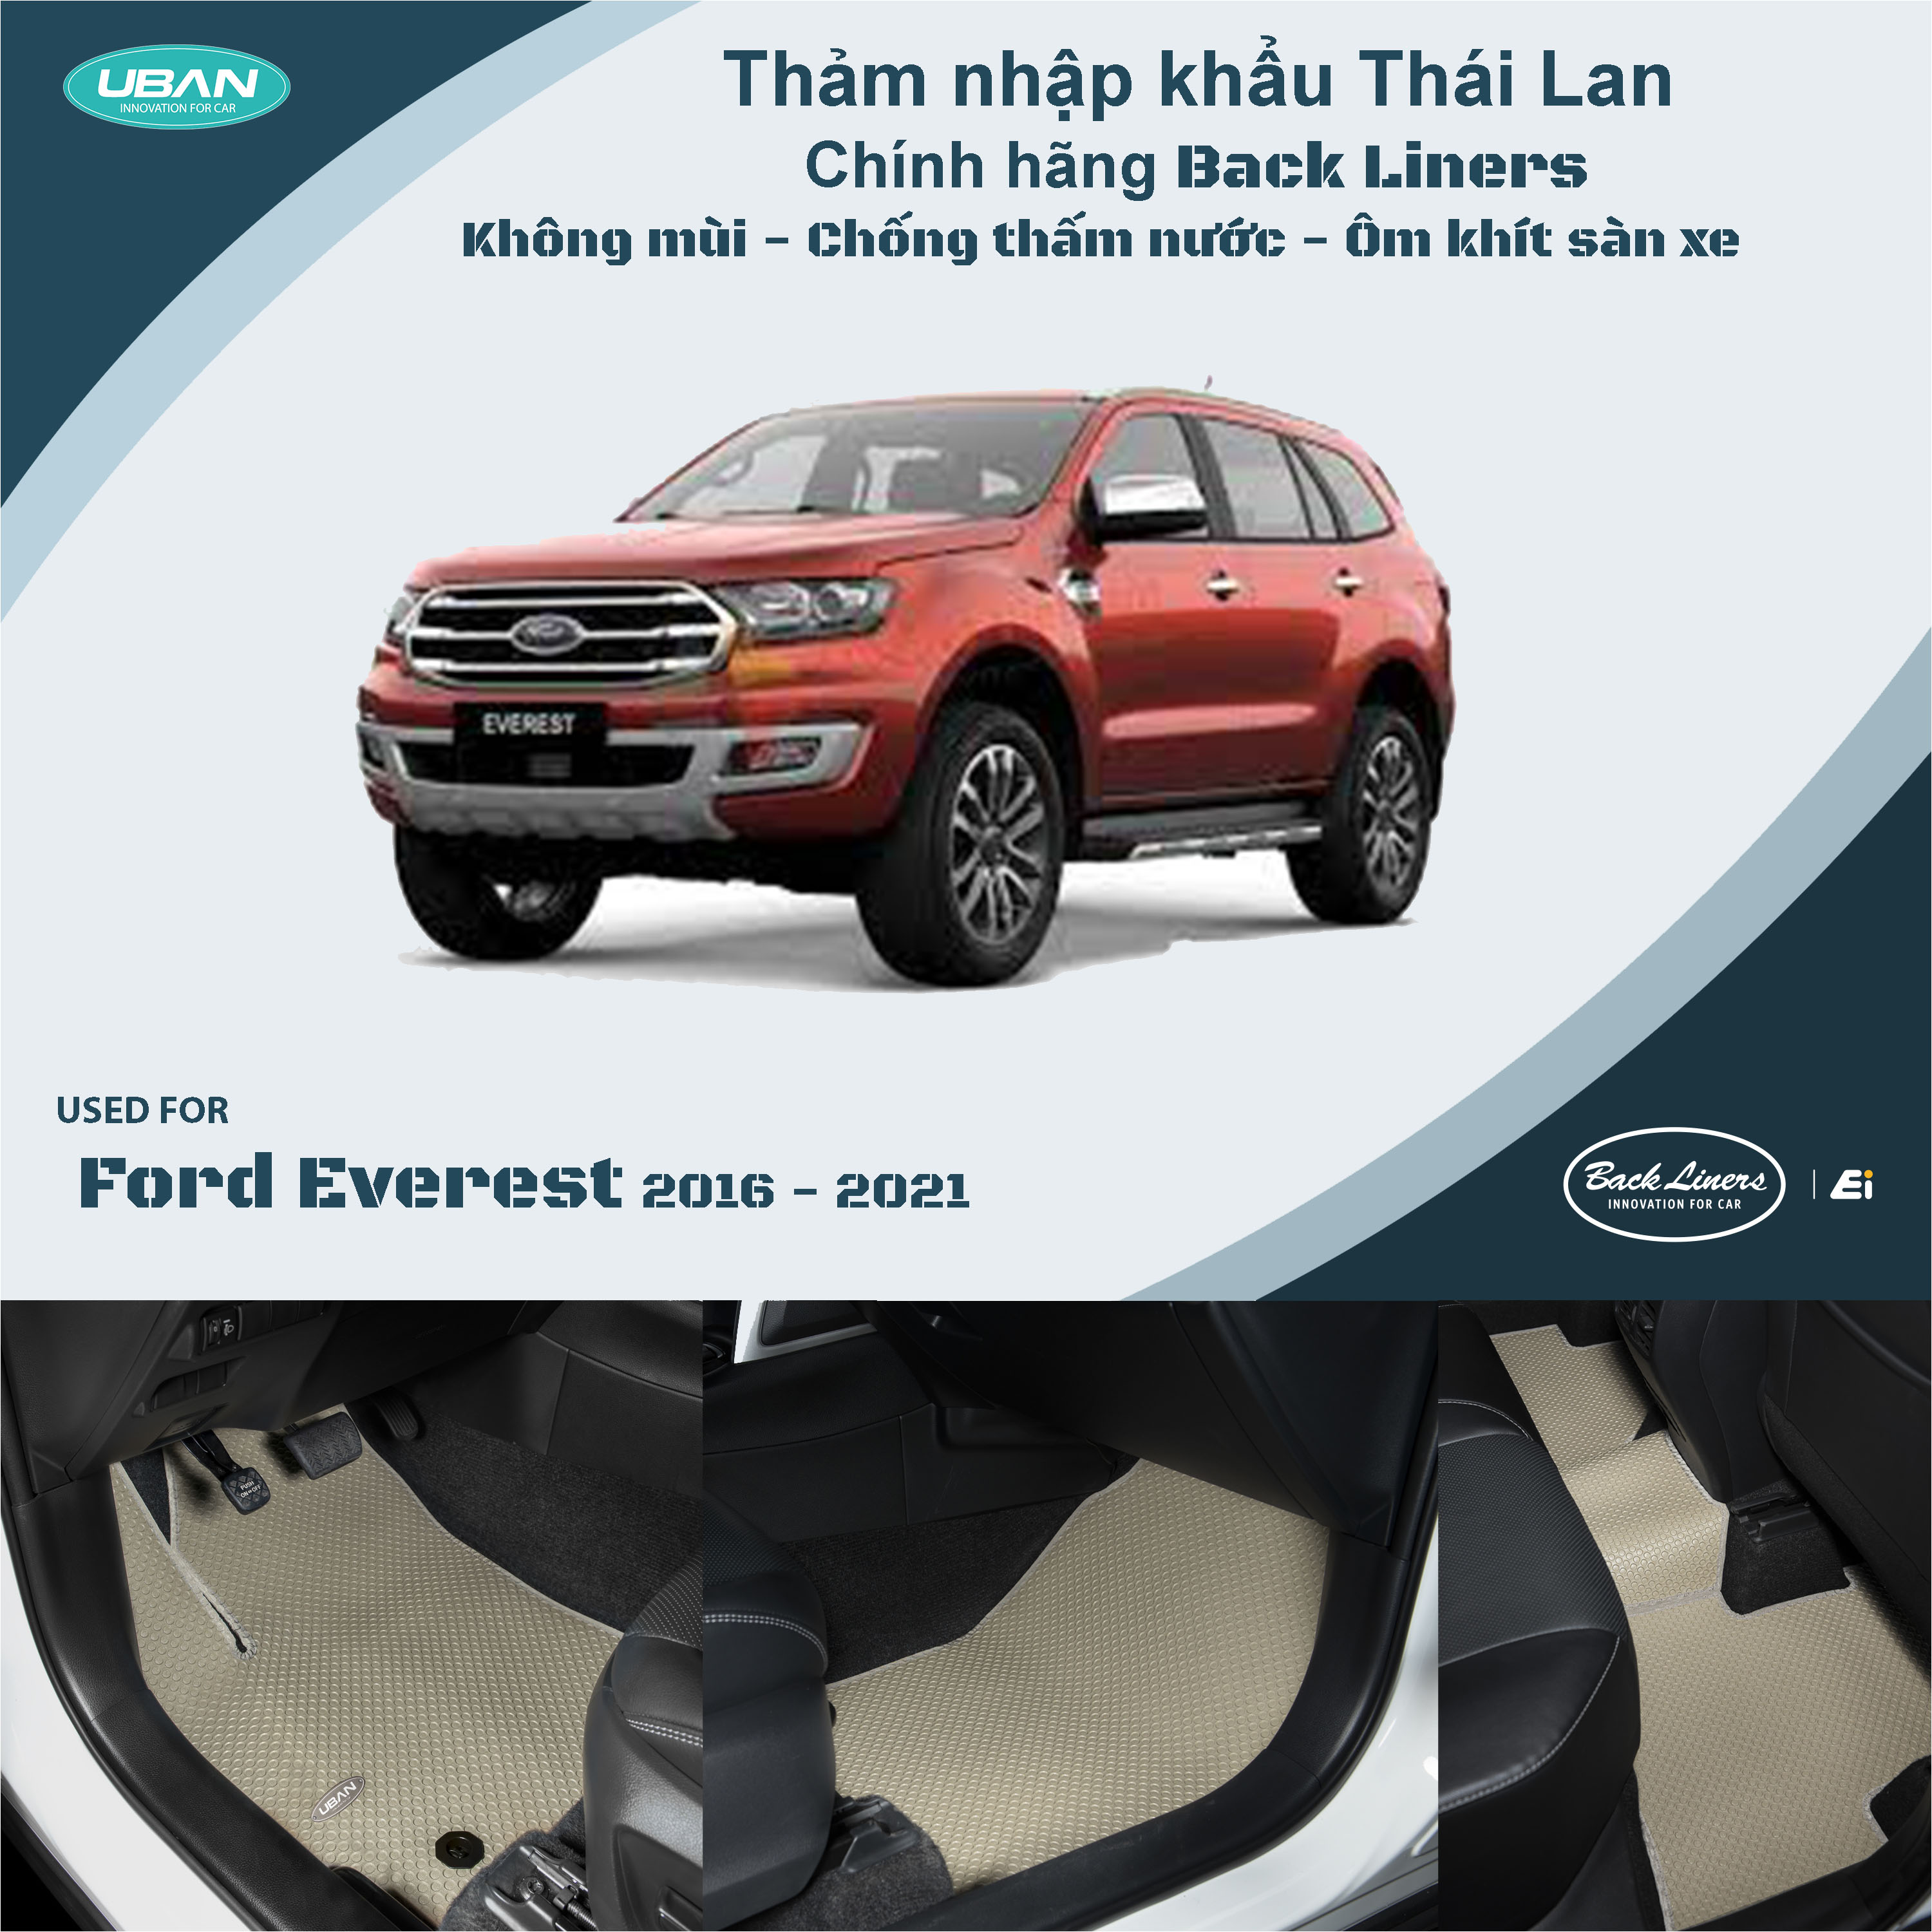 Thảm lót sàn ô tô UBAN cho xe Ford Everest (2016 - 2021) - Nhập khẩu Thái Lan